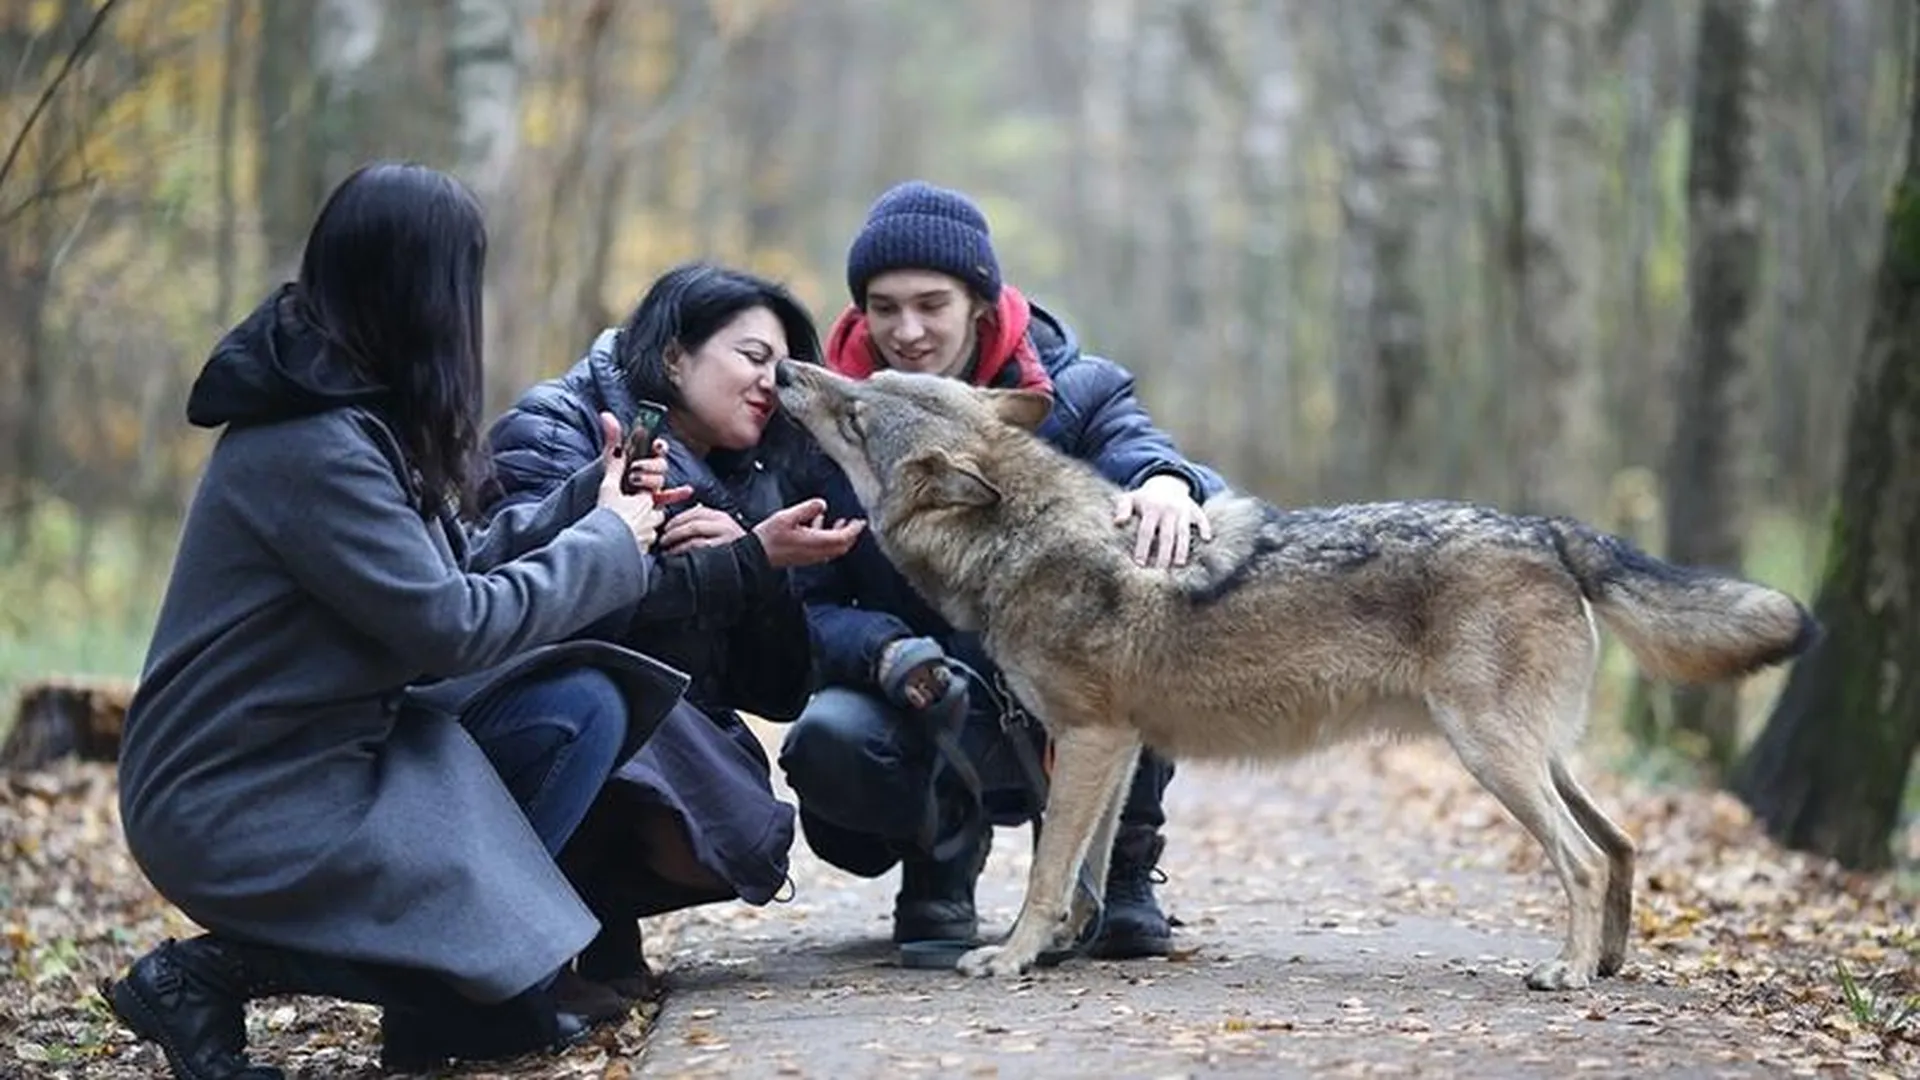 Волк тебе товарищ: безопасны ли фотосессии и прогулки с лесными хищниками